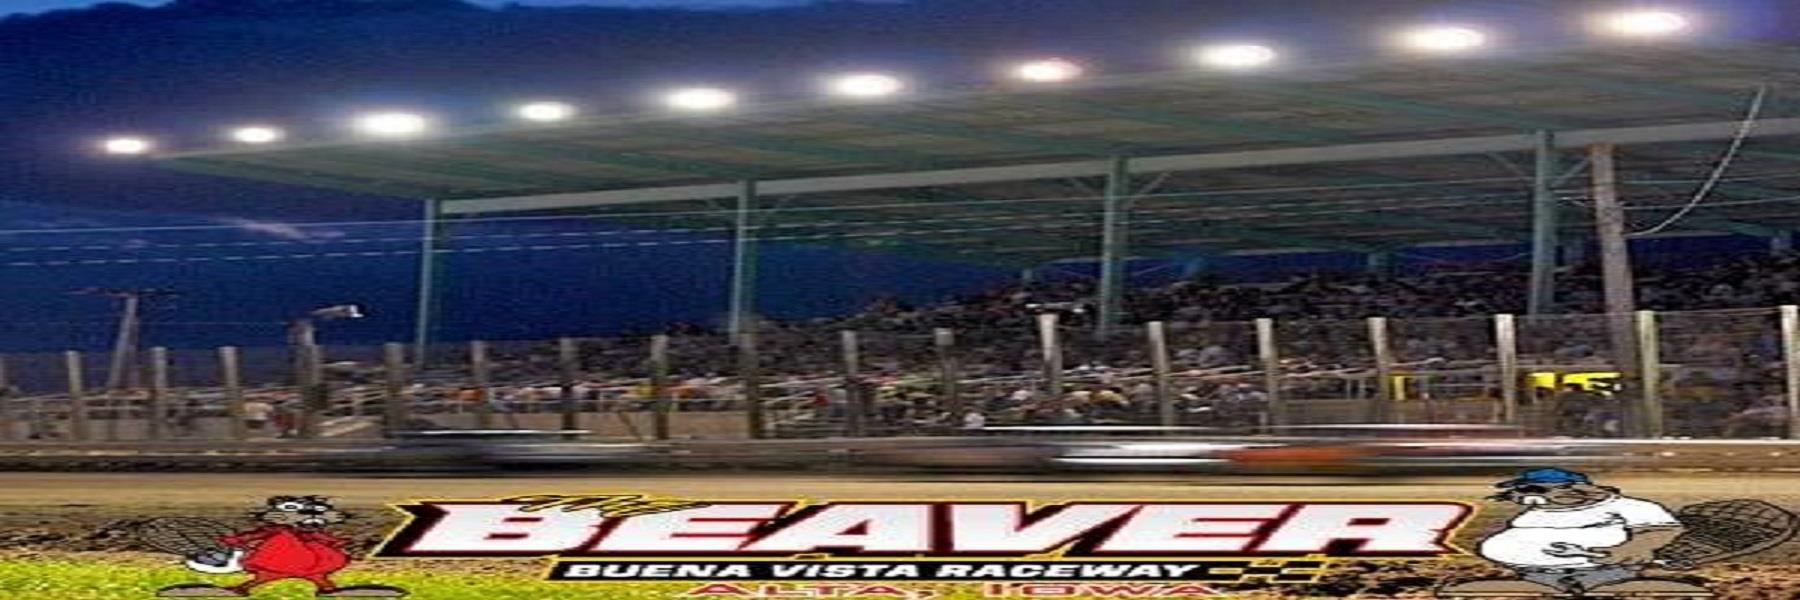 6/1/2022 - Buena Vista Raceway